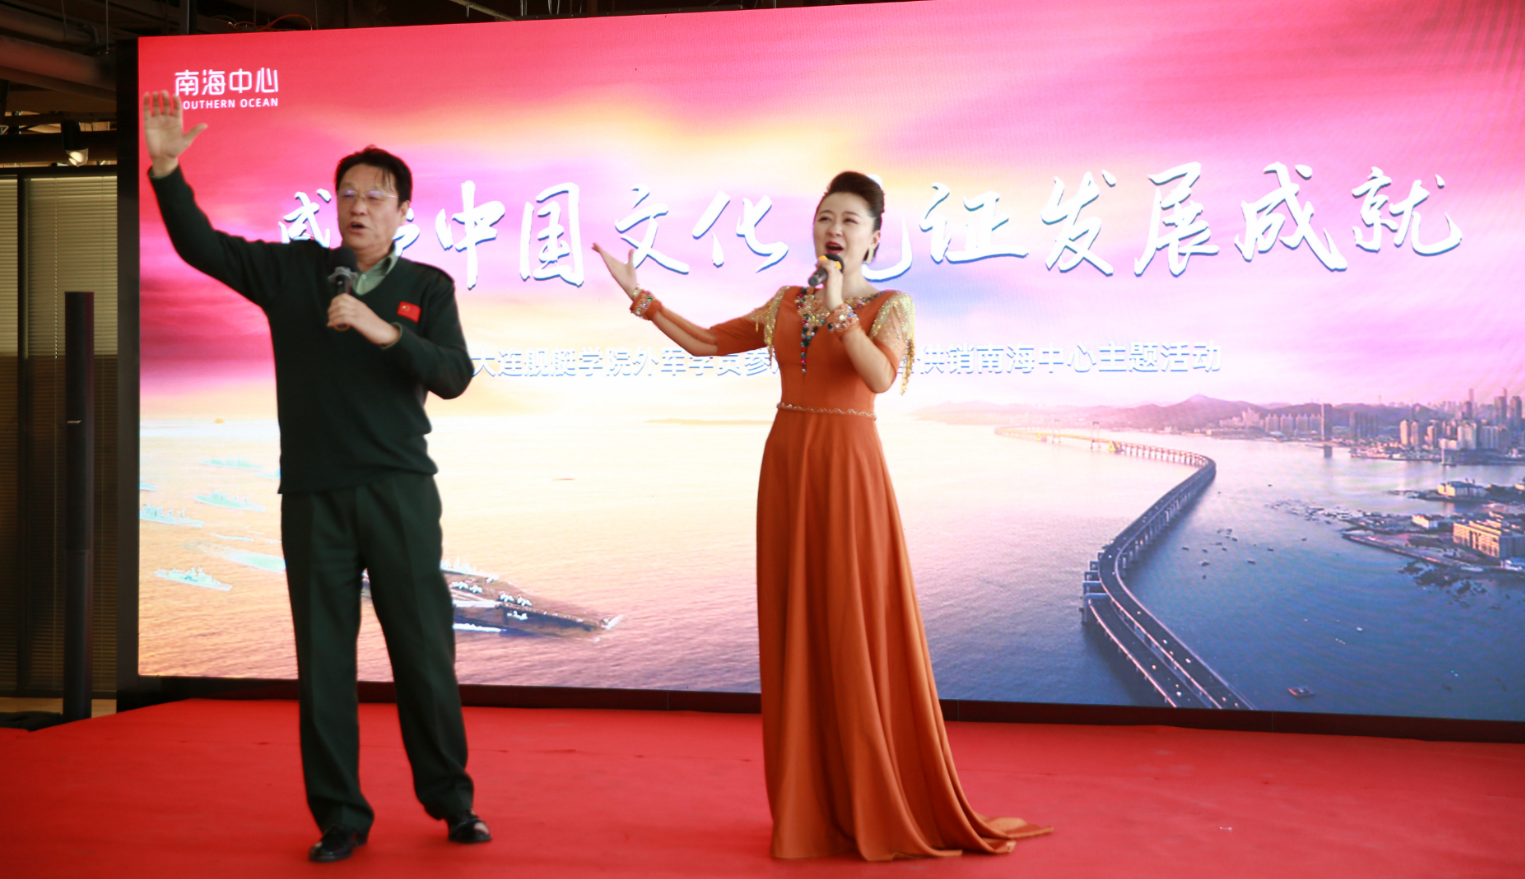 海军大连舰艇学院外军学员参观见学 中国供销南海中心文化主题活动